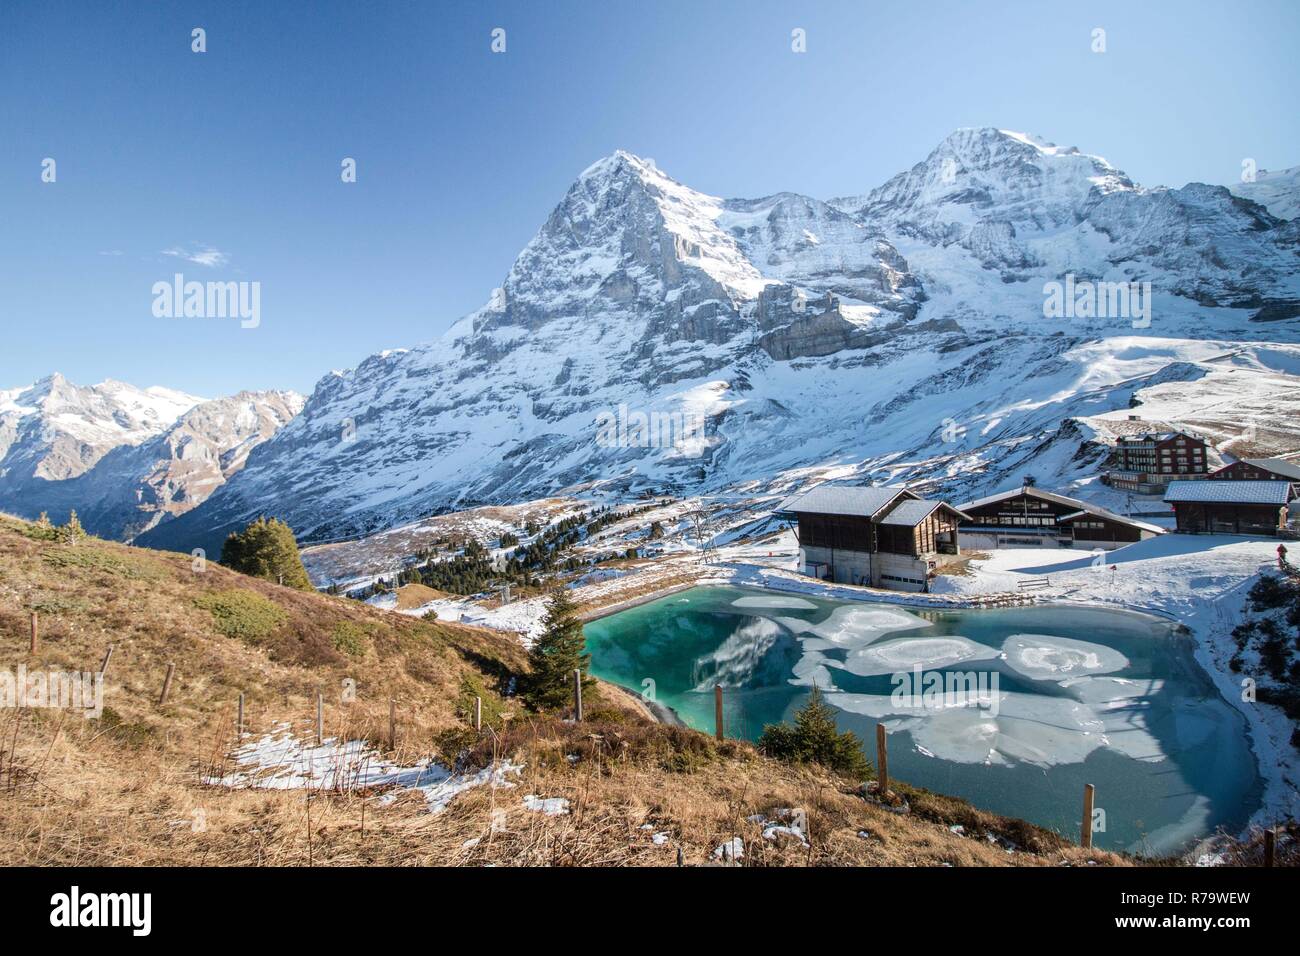 Vue idyllique sur le lac de montagne gelé et les montagnes enneigées de Grindelwald, Suisse Banque D'Images